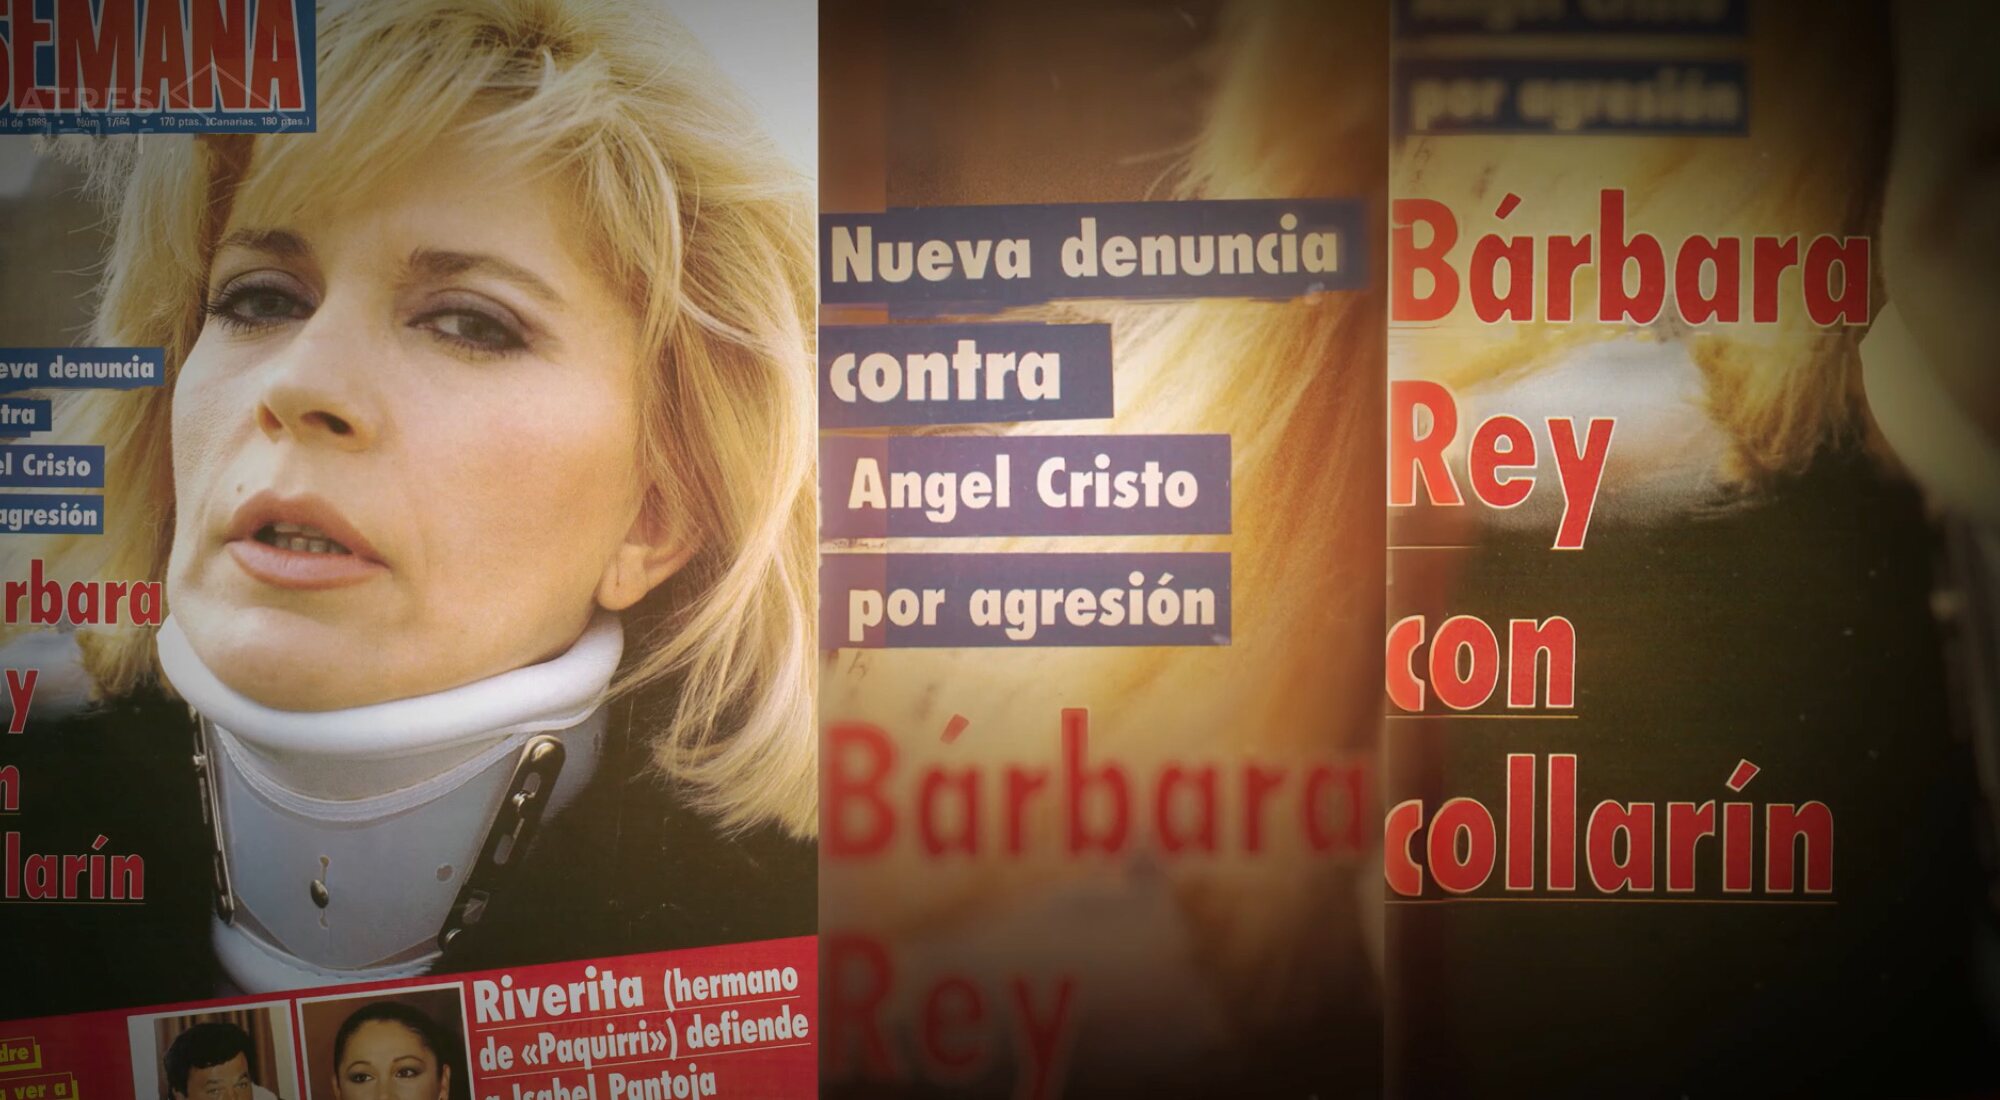 Bárbara Rey, en una noticia sobre una de las agresiones de Ángel Cristo relatada en 'Una vida Bárbara'